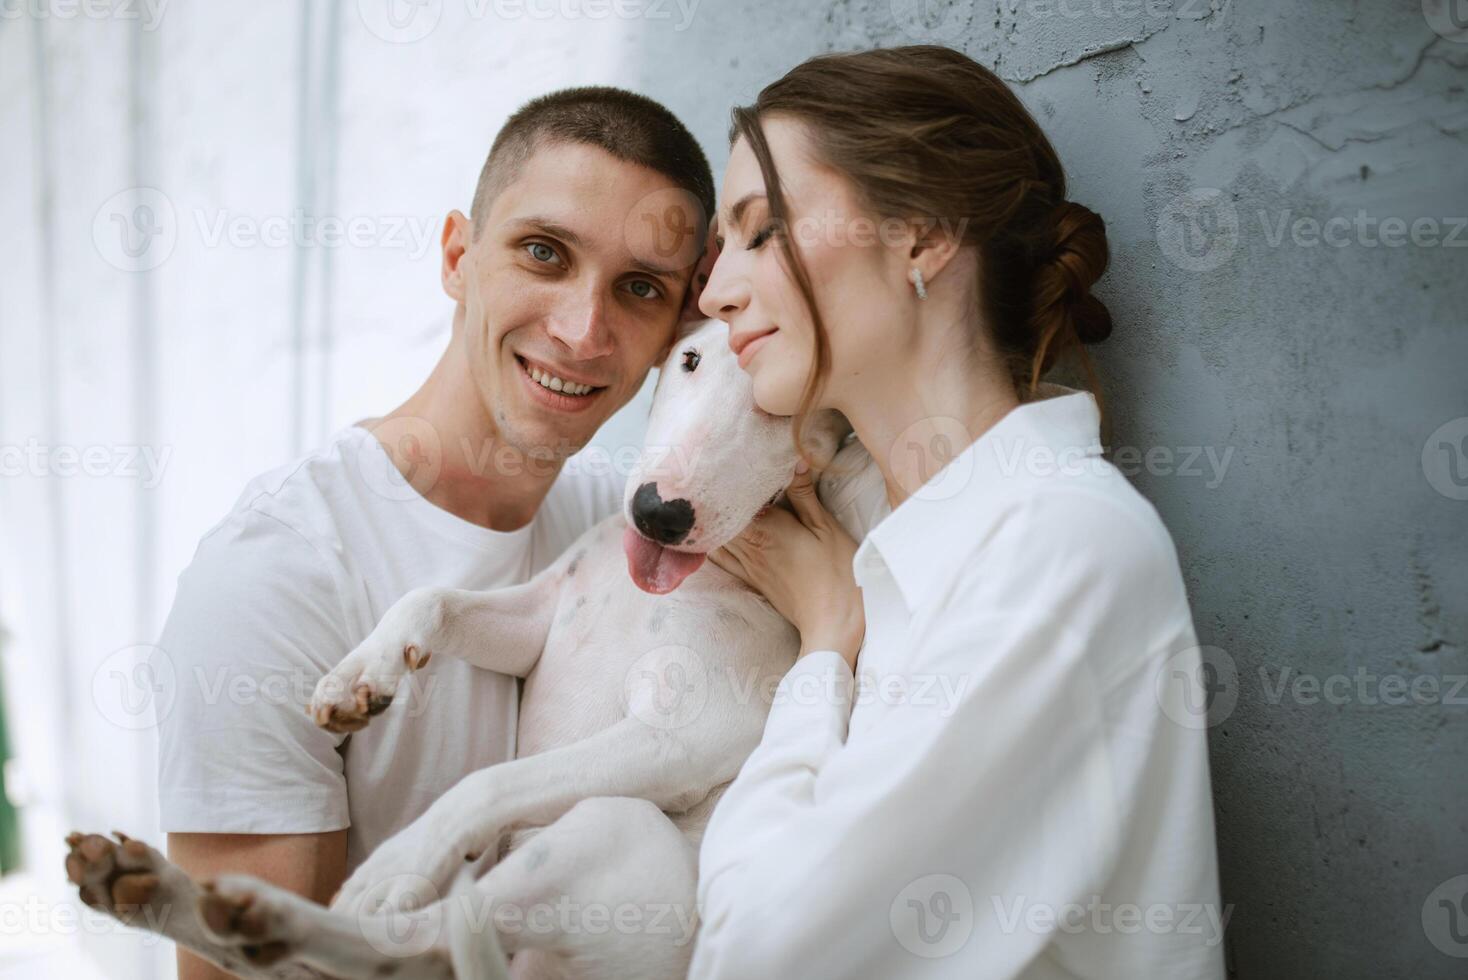 jovem casal cara e menina dentro uma brilhante quarto jogando com animal foto